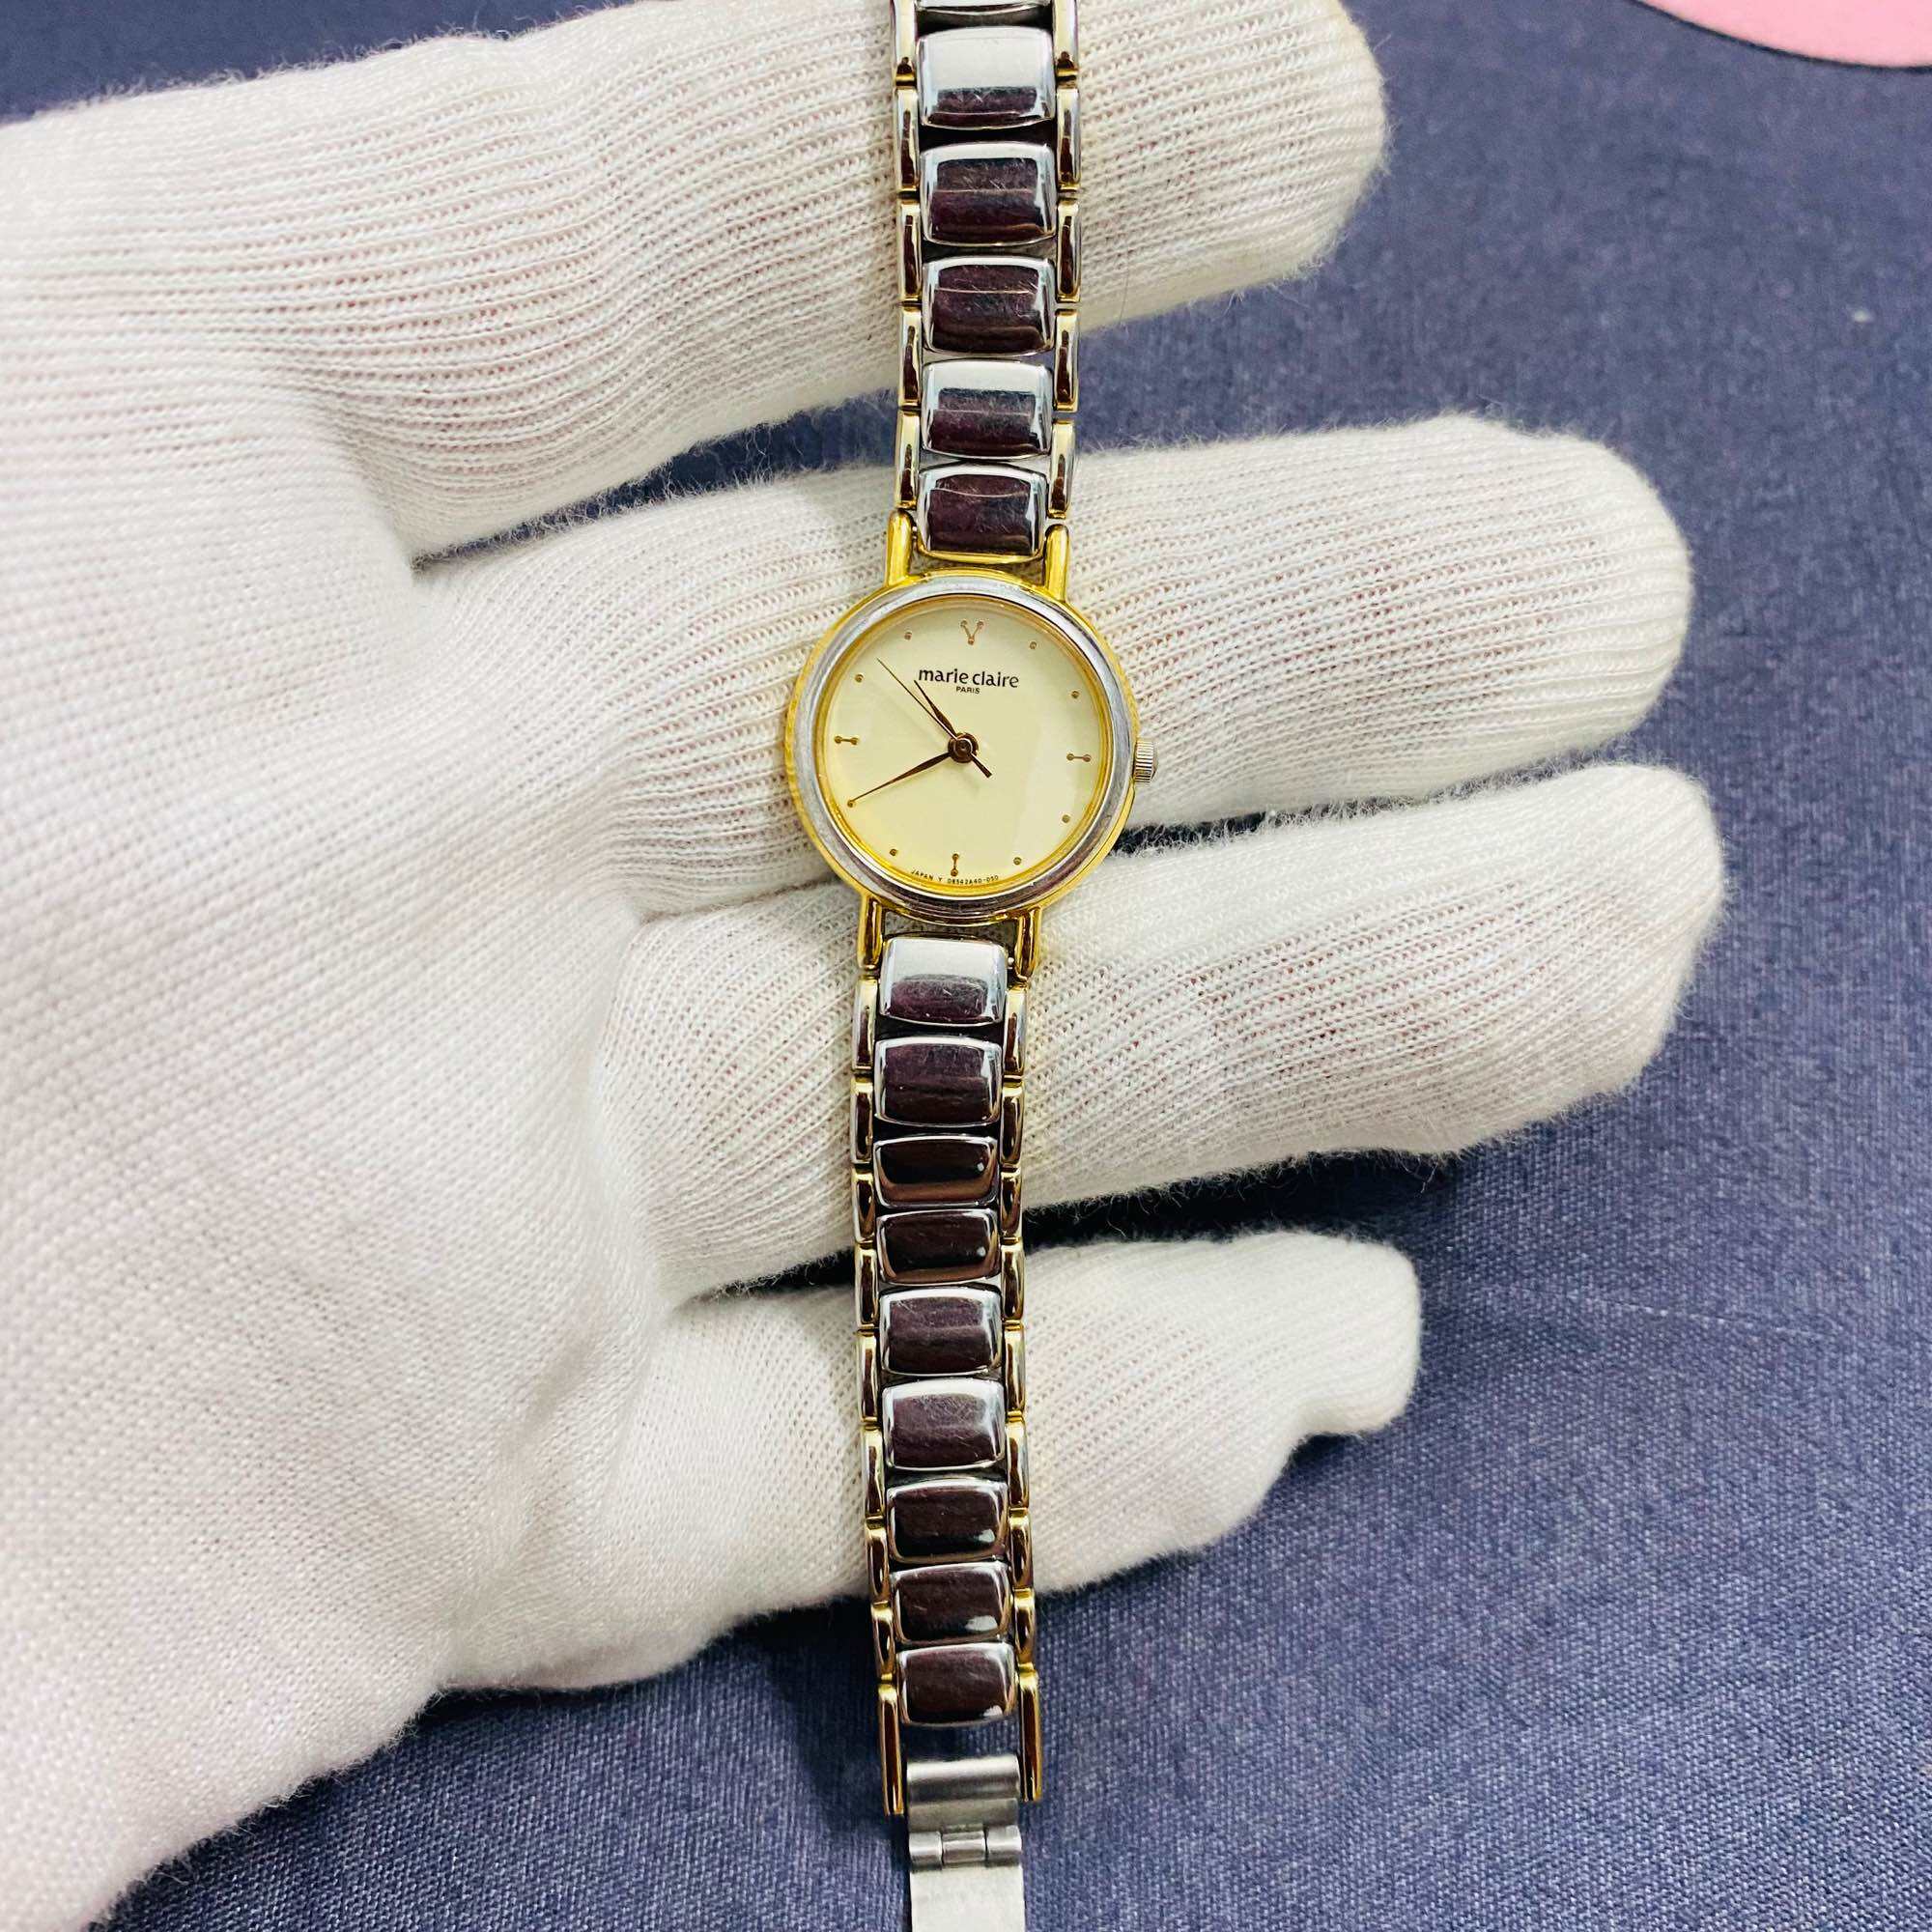 Đồng hồ nữ Marie claire khảm trai , mặt tròn size 21mm, dây tháo không rỉ, độ mới đạt 95%, cam kết hàng chính hãng